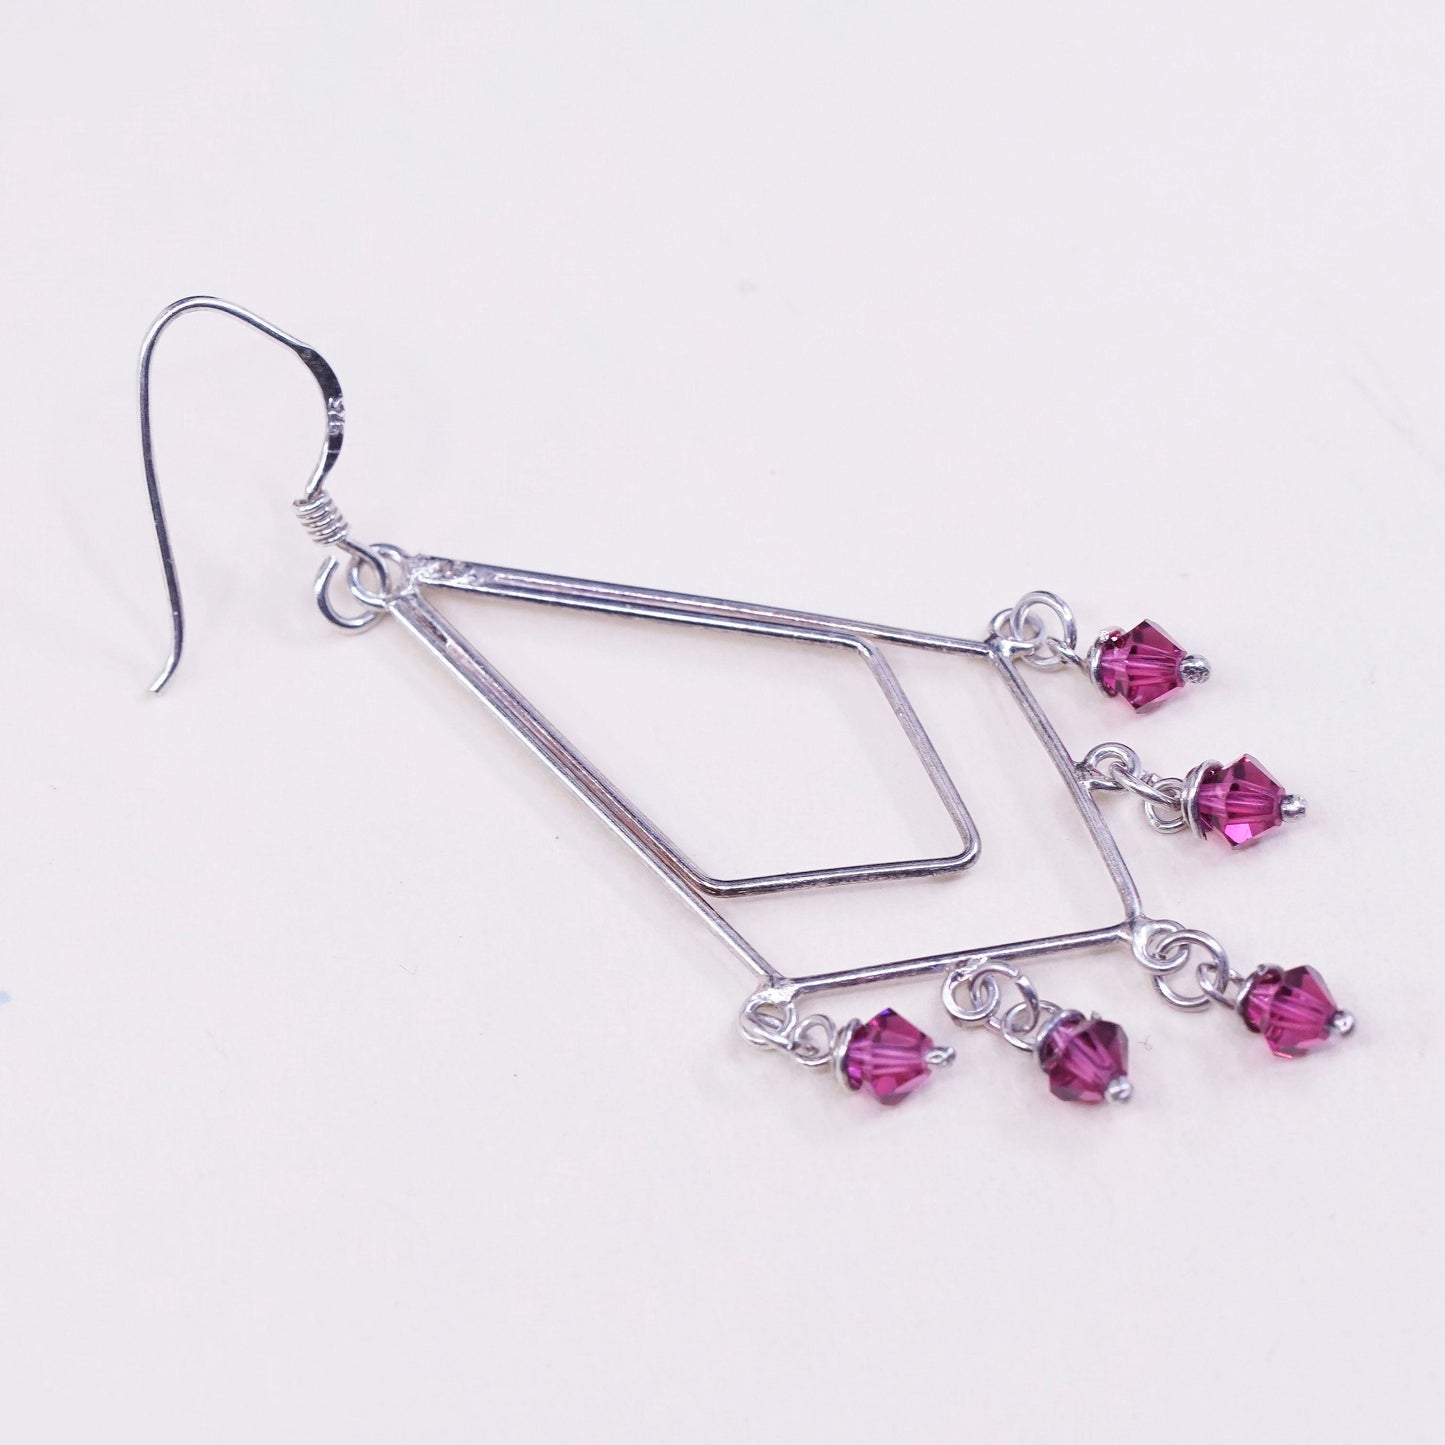 Vintage sterling silver handmade earrings, 925 w/ red cluster crystal dangles